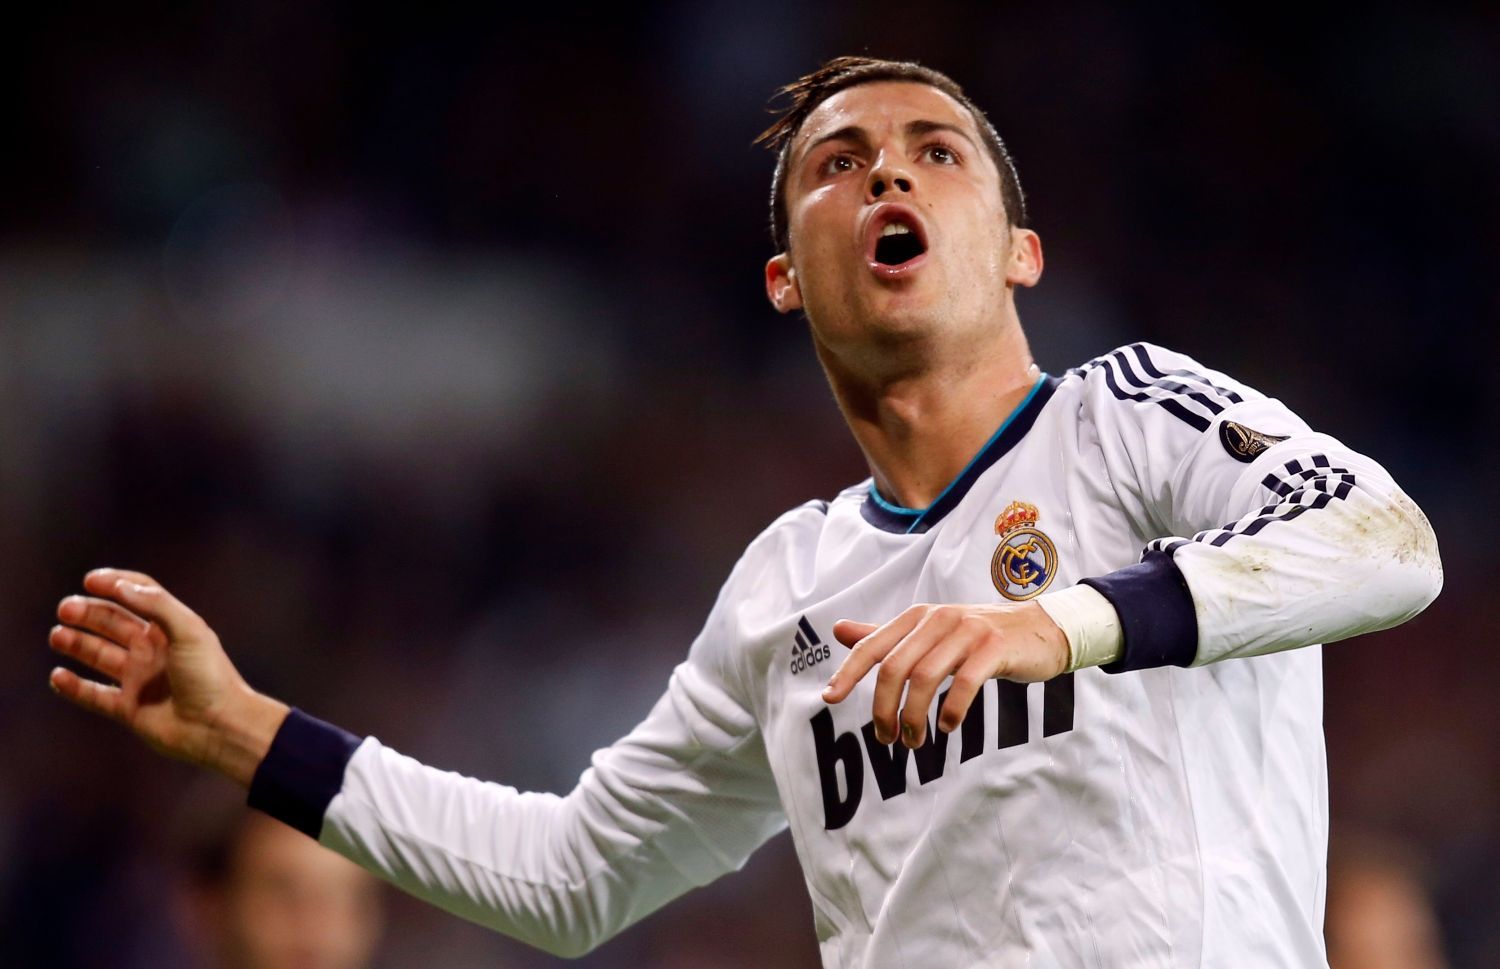 Portugalský fotbalista Cristiano Ronaldo z Realu Madrid slaví gól v utkání La Ligy 2012/13 s Deportivem La Coruňa.